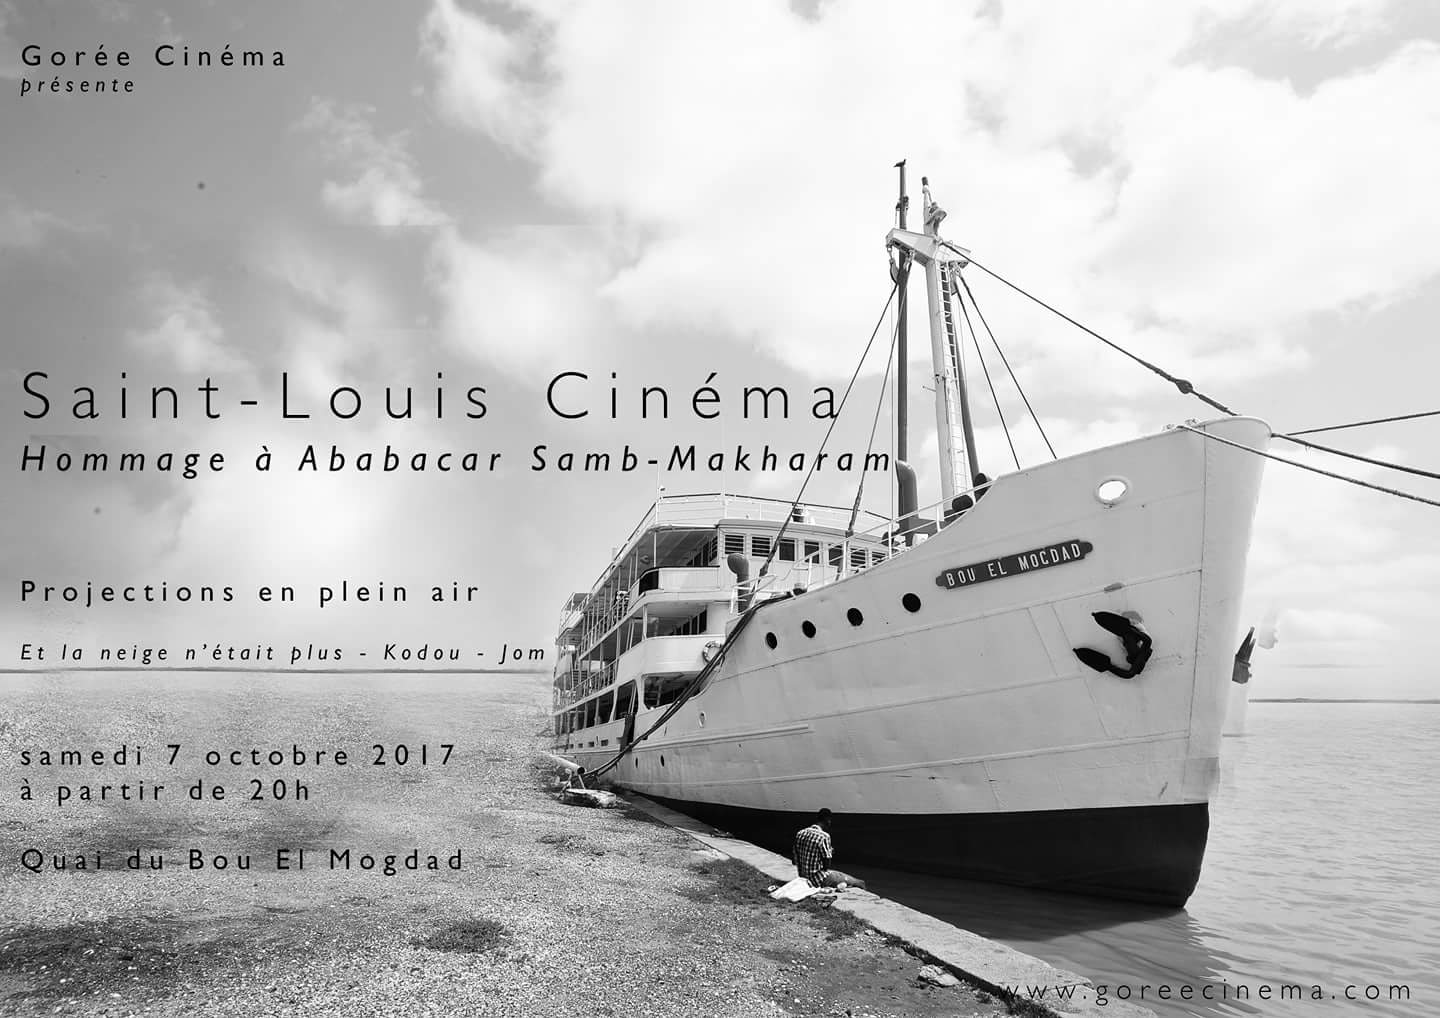 Saint-Louis : Gorée Cinéma va rendre hommage au cinéaste Ababacar Samb-Makharam, samedi.